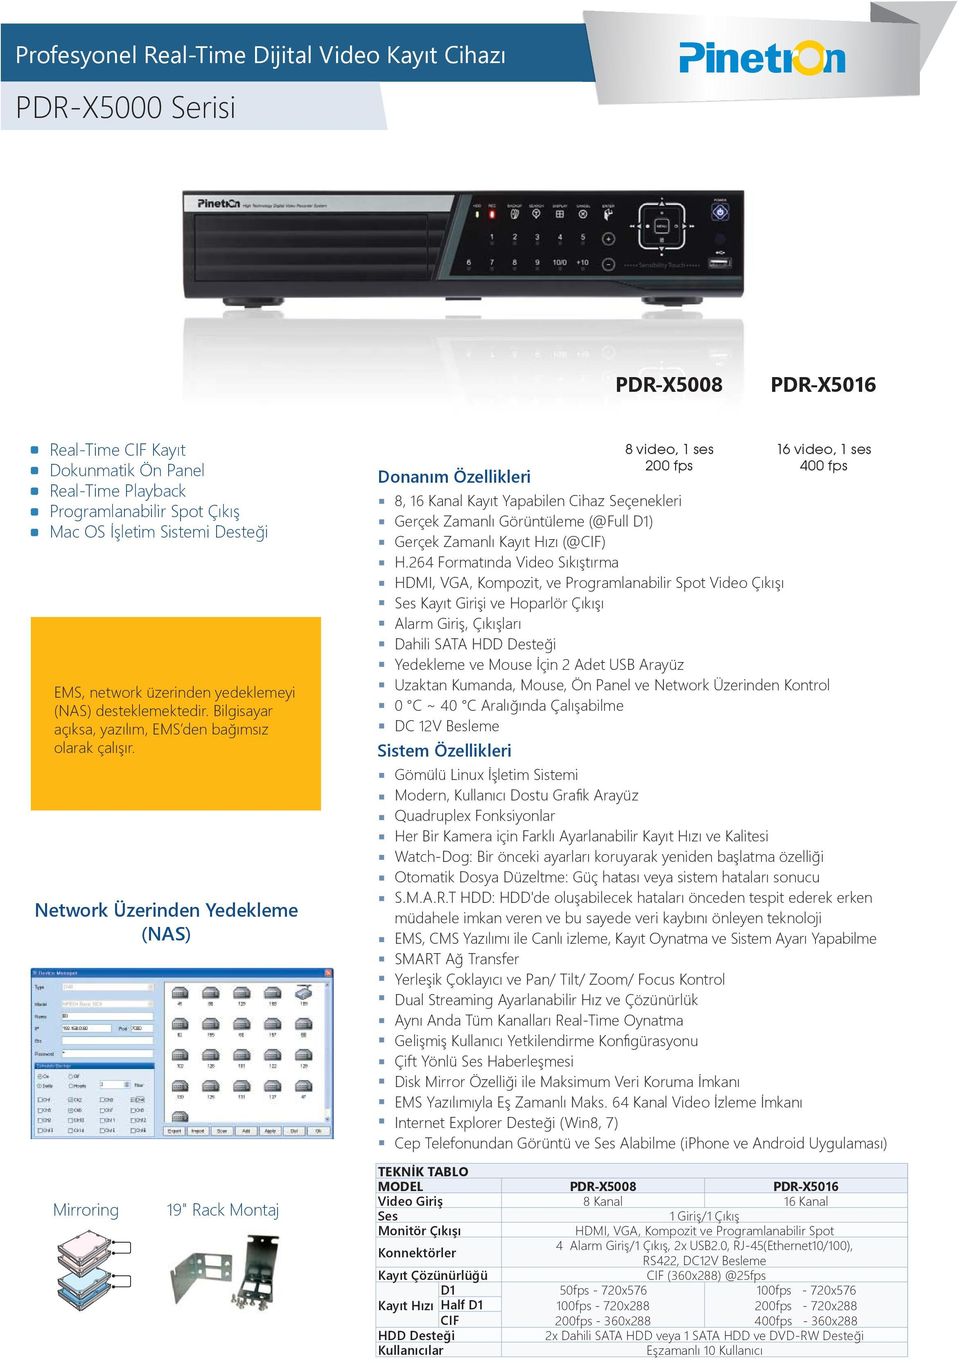 Network Üzerinden Yedekleme (NAS) PDR-X5008 950 $ 8 video, 1 ses 200 fps PDR-X5016 1080 $ 16 video, 1 ses 400 fps 8, 16 Kanal Kayıt Yapabilen Cihaz Seçenekleri Gerçek Zamanlı Görüntüleme (@Full D1)